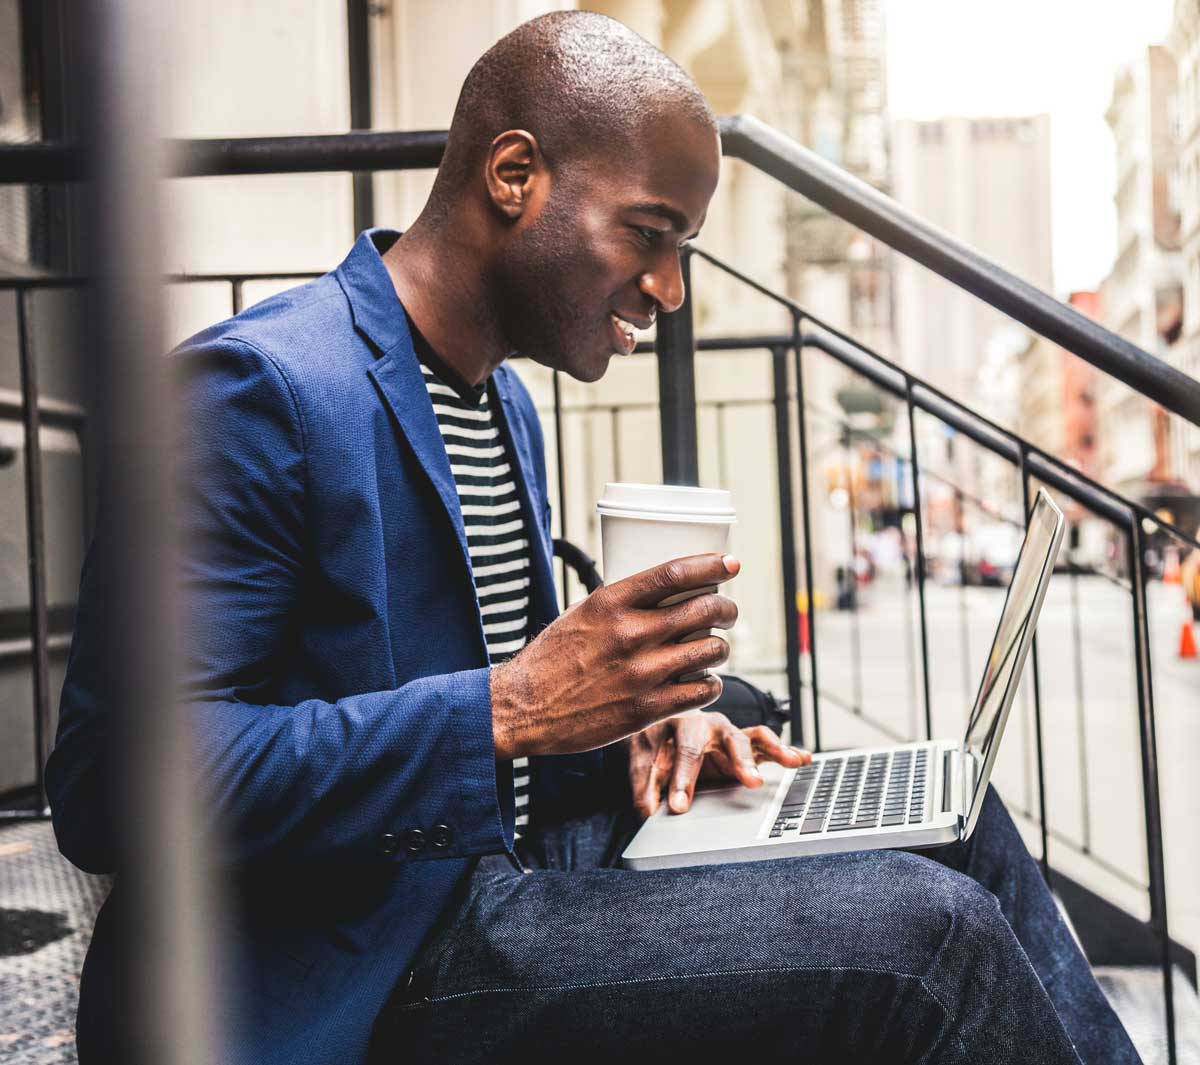 Un tipo revisando su correo electrónico y bebiendo café al aire libre en unas escaleras